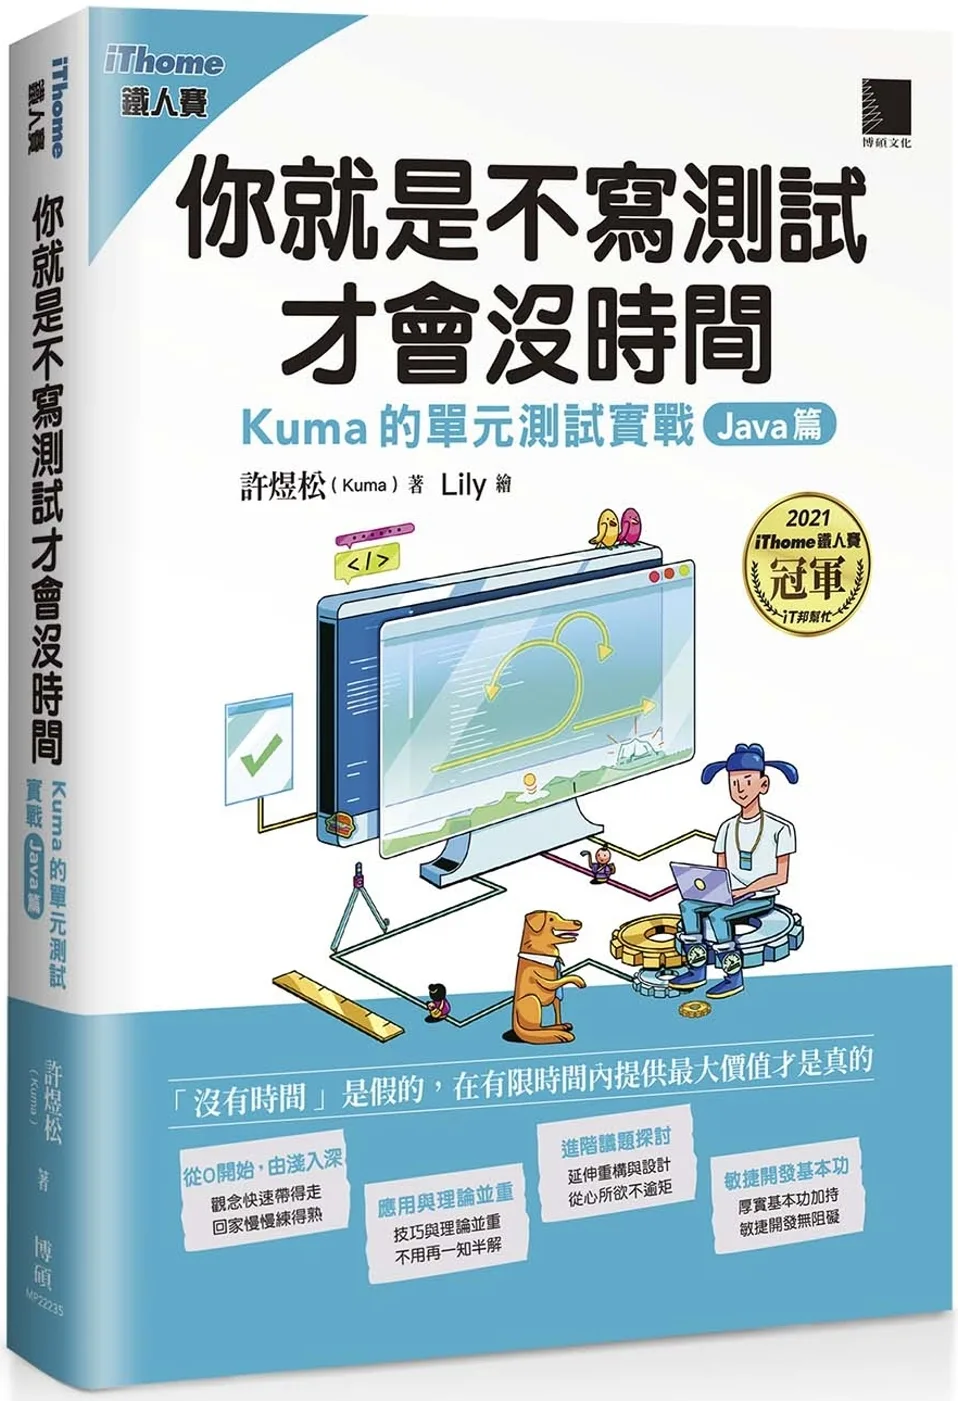 你就是不寫測試才會沒時間：Kuma的單元測試實戰-Java篇